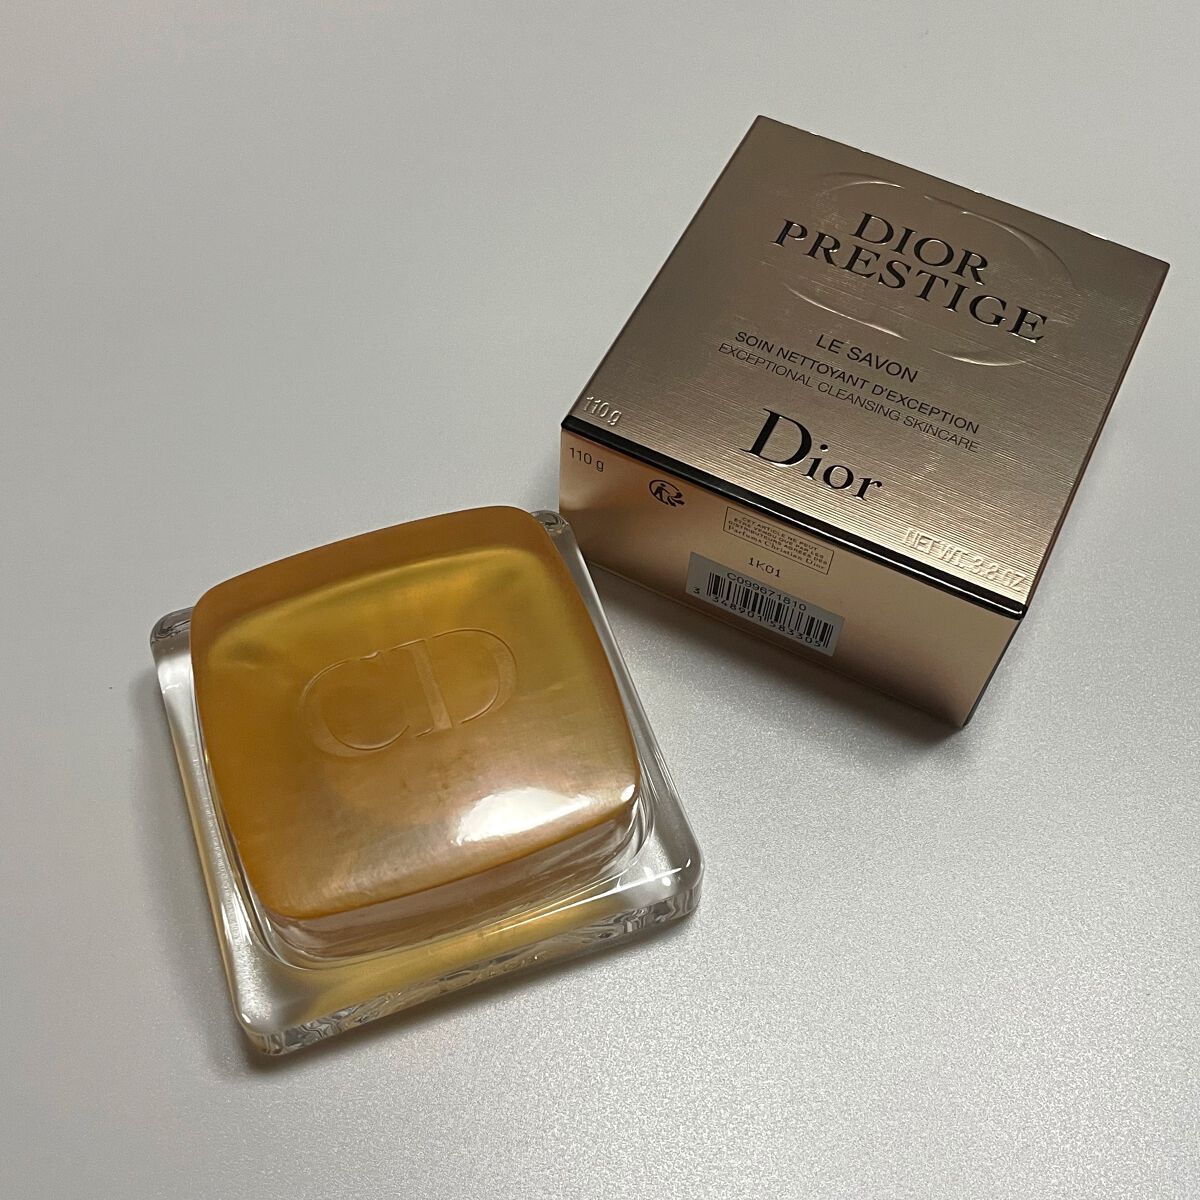 Dior プレステージ ル サヴォン(化粧石けん) 110g - 洗顔料